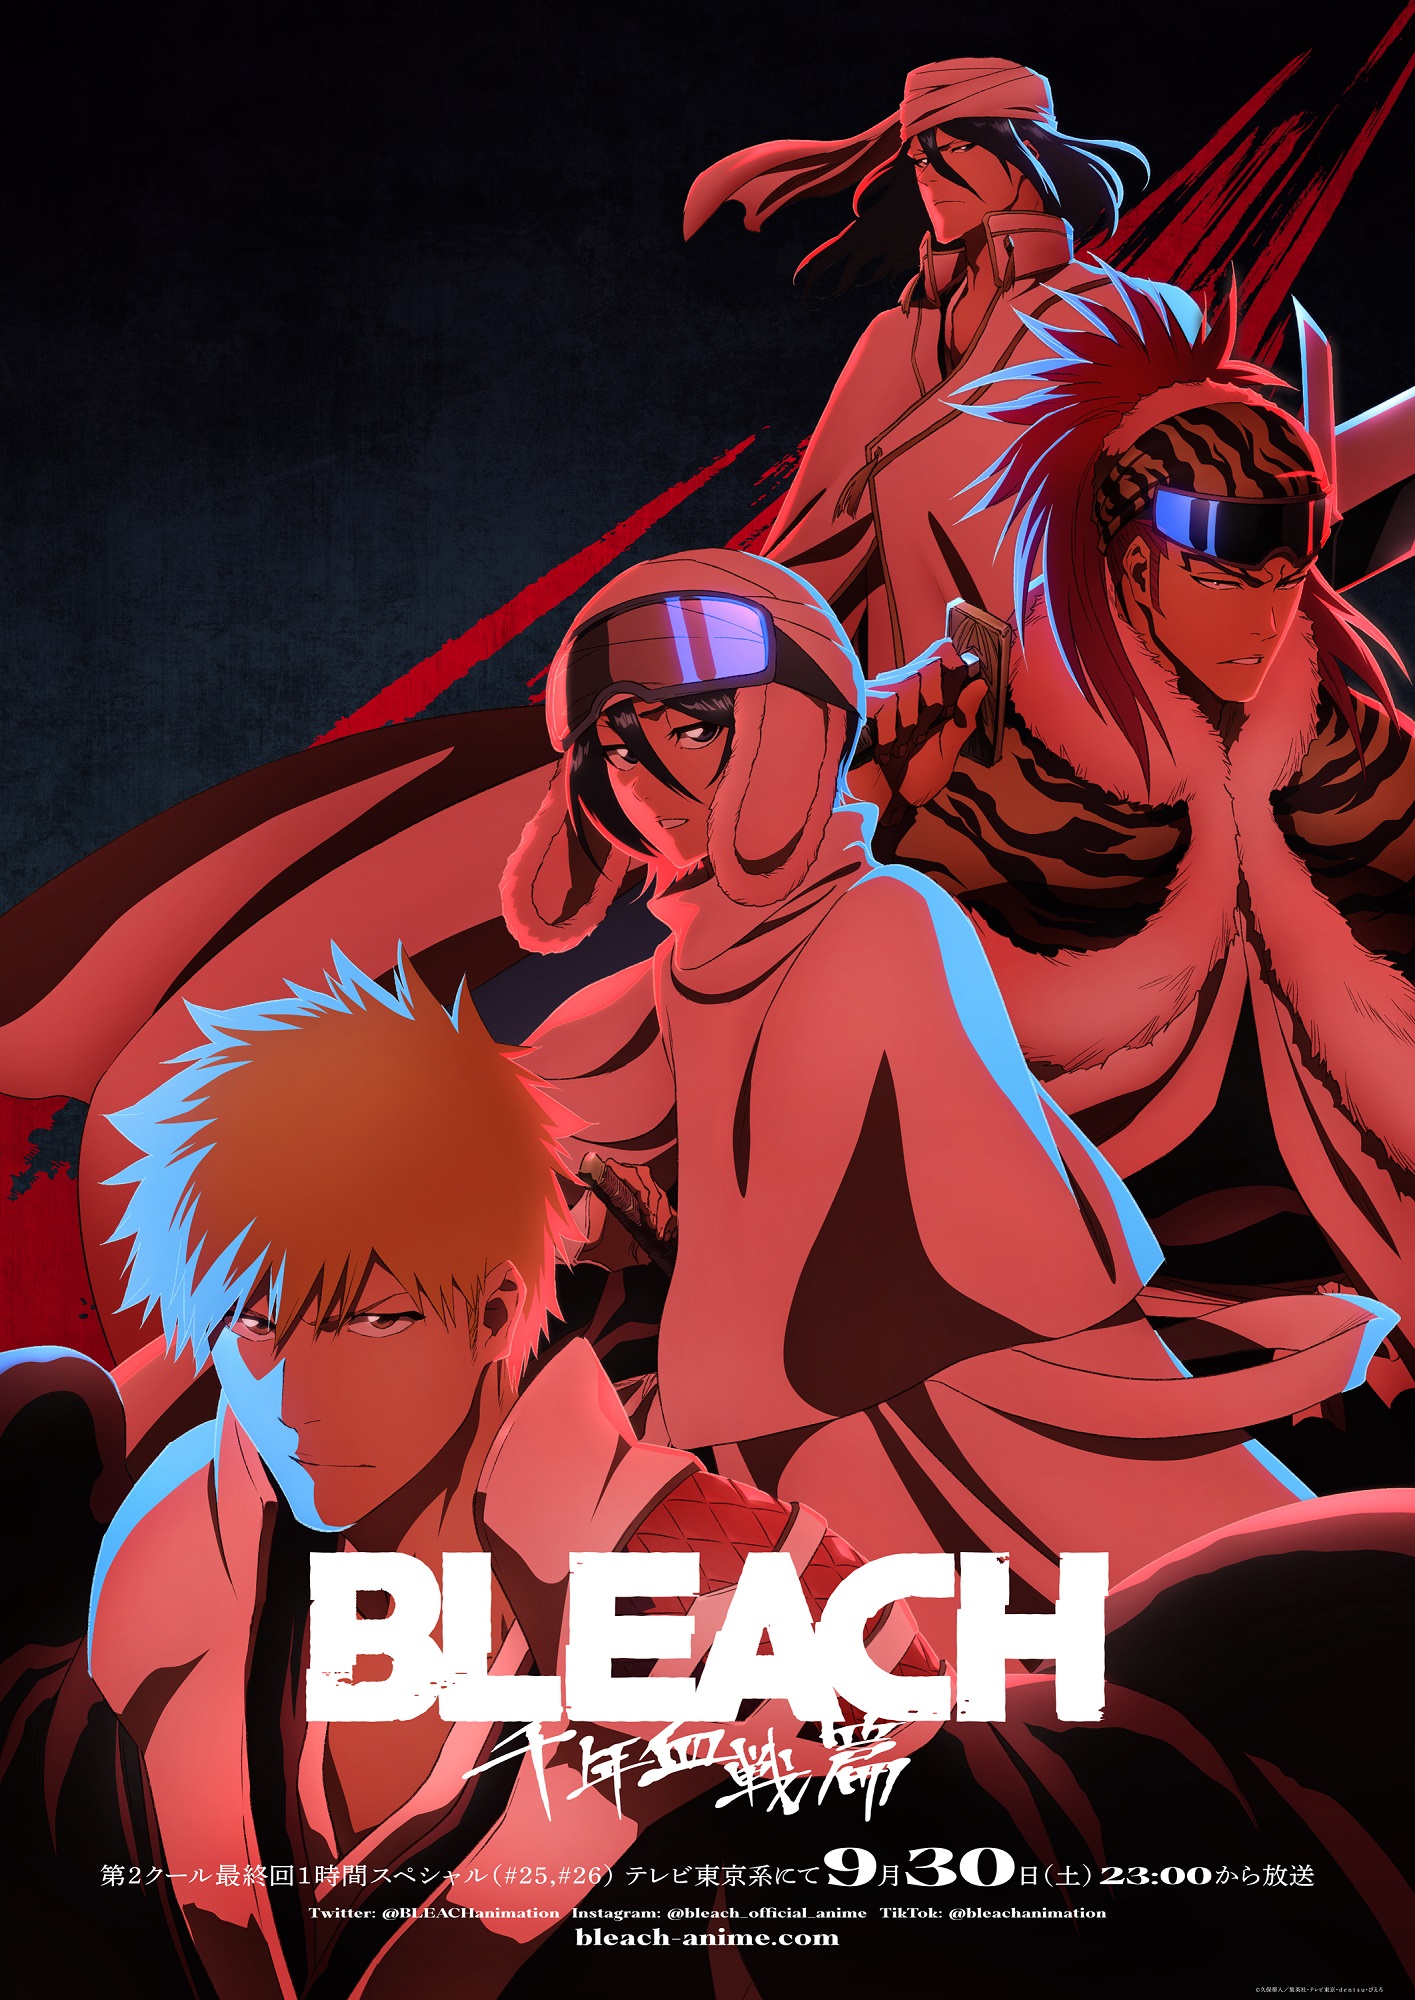 Bleach: Thousand-Year Blood War' Part 1 Ending 1-Hour Special